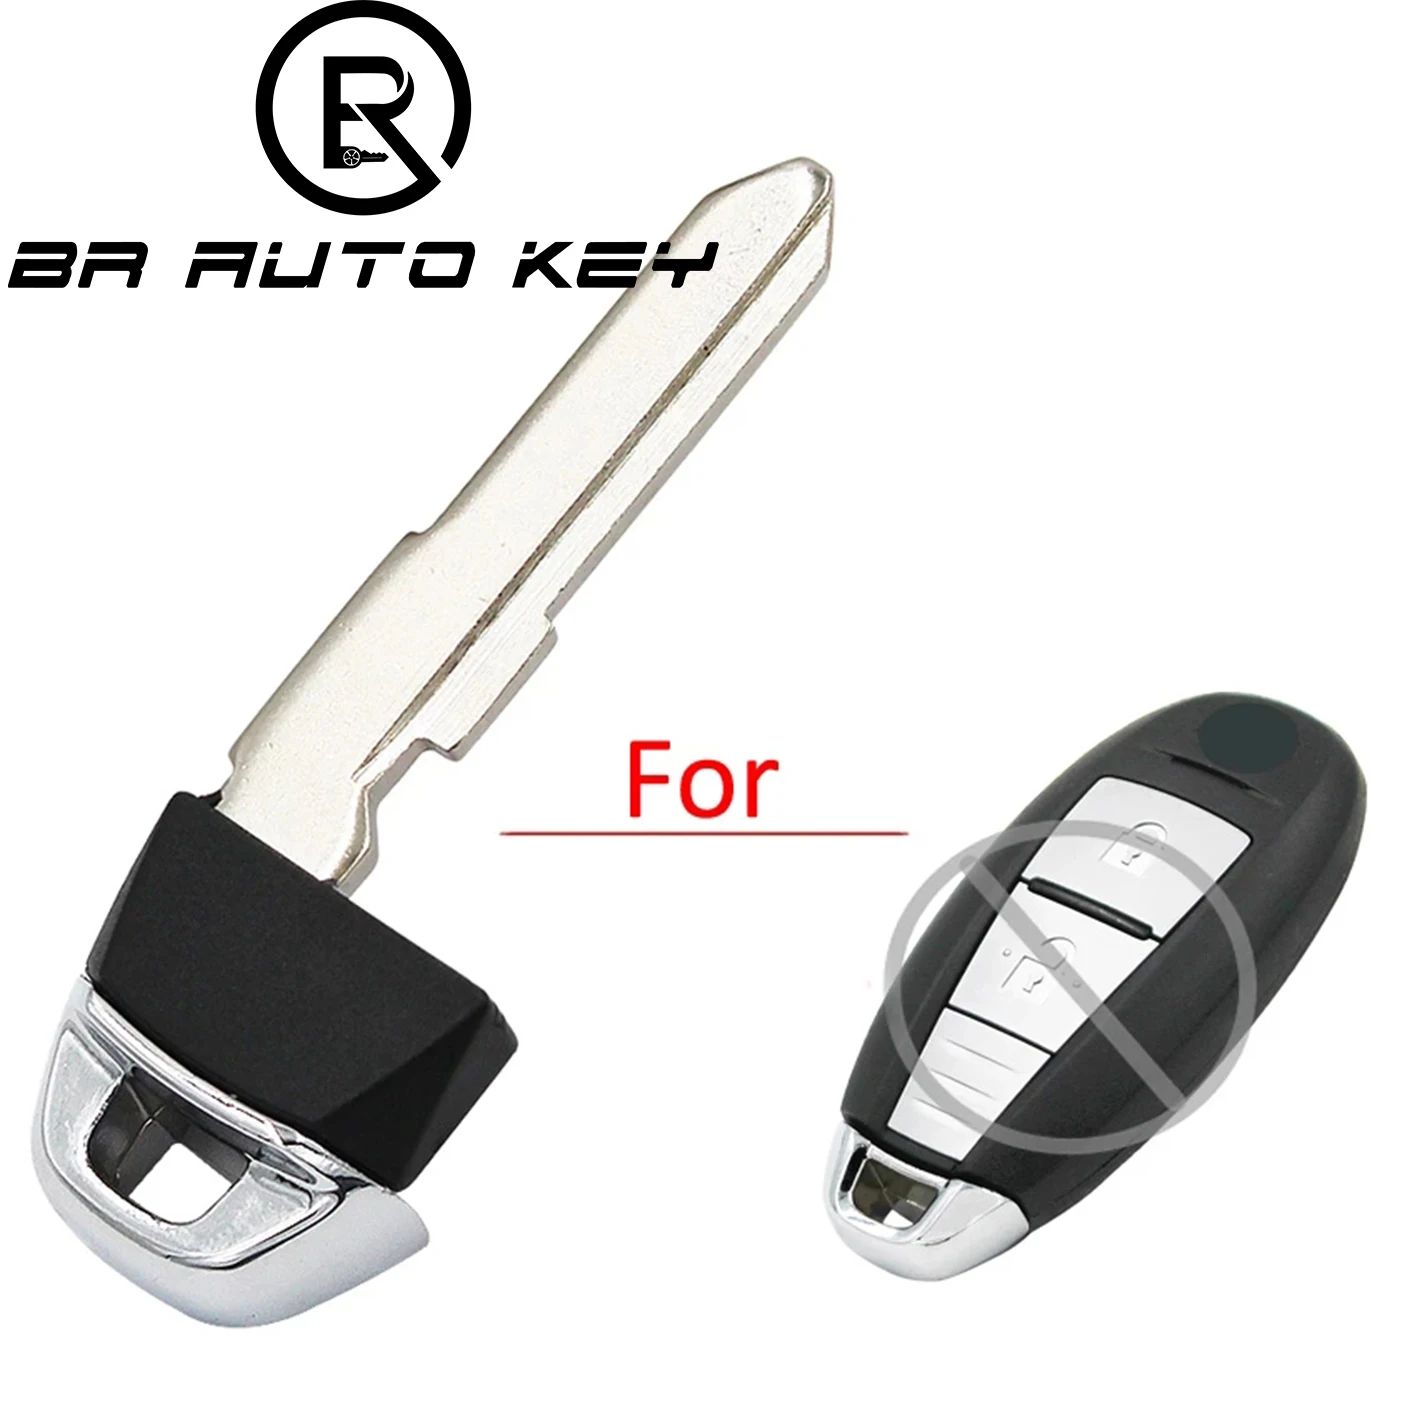 BRKEY Smart Emergency Key Blade For Suzuki Kizashi Swift SX4 2010 2011 2012 HU87R Replacement Remote key blade